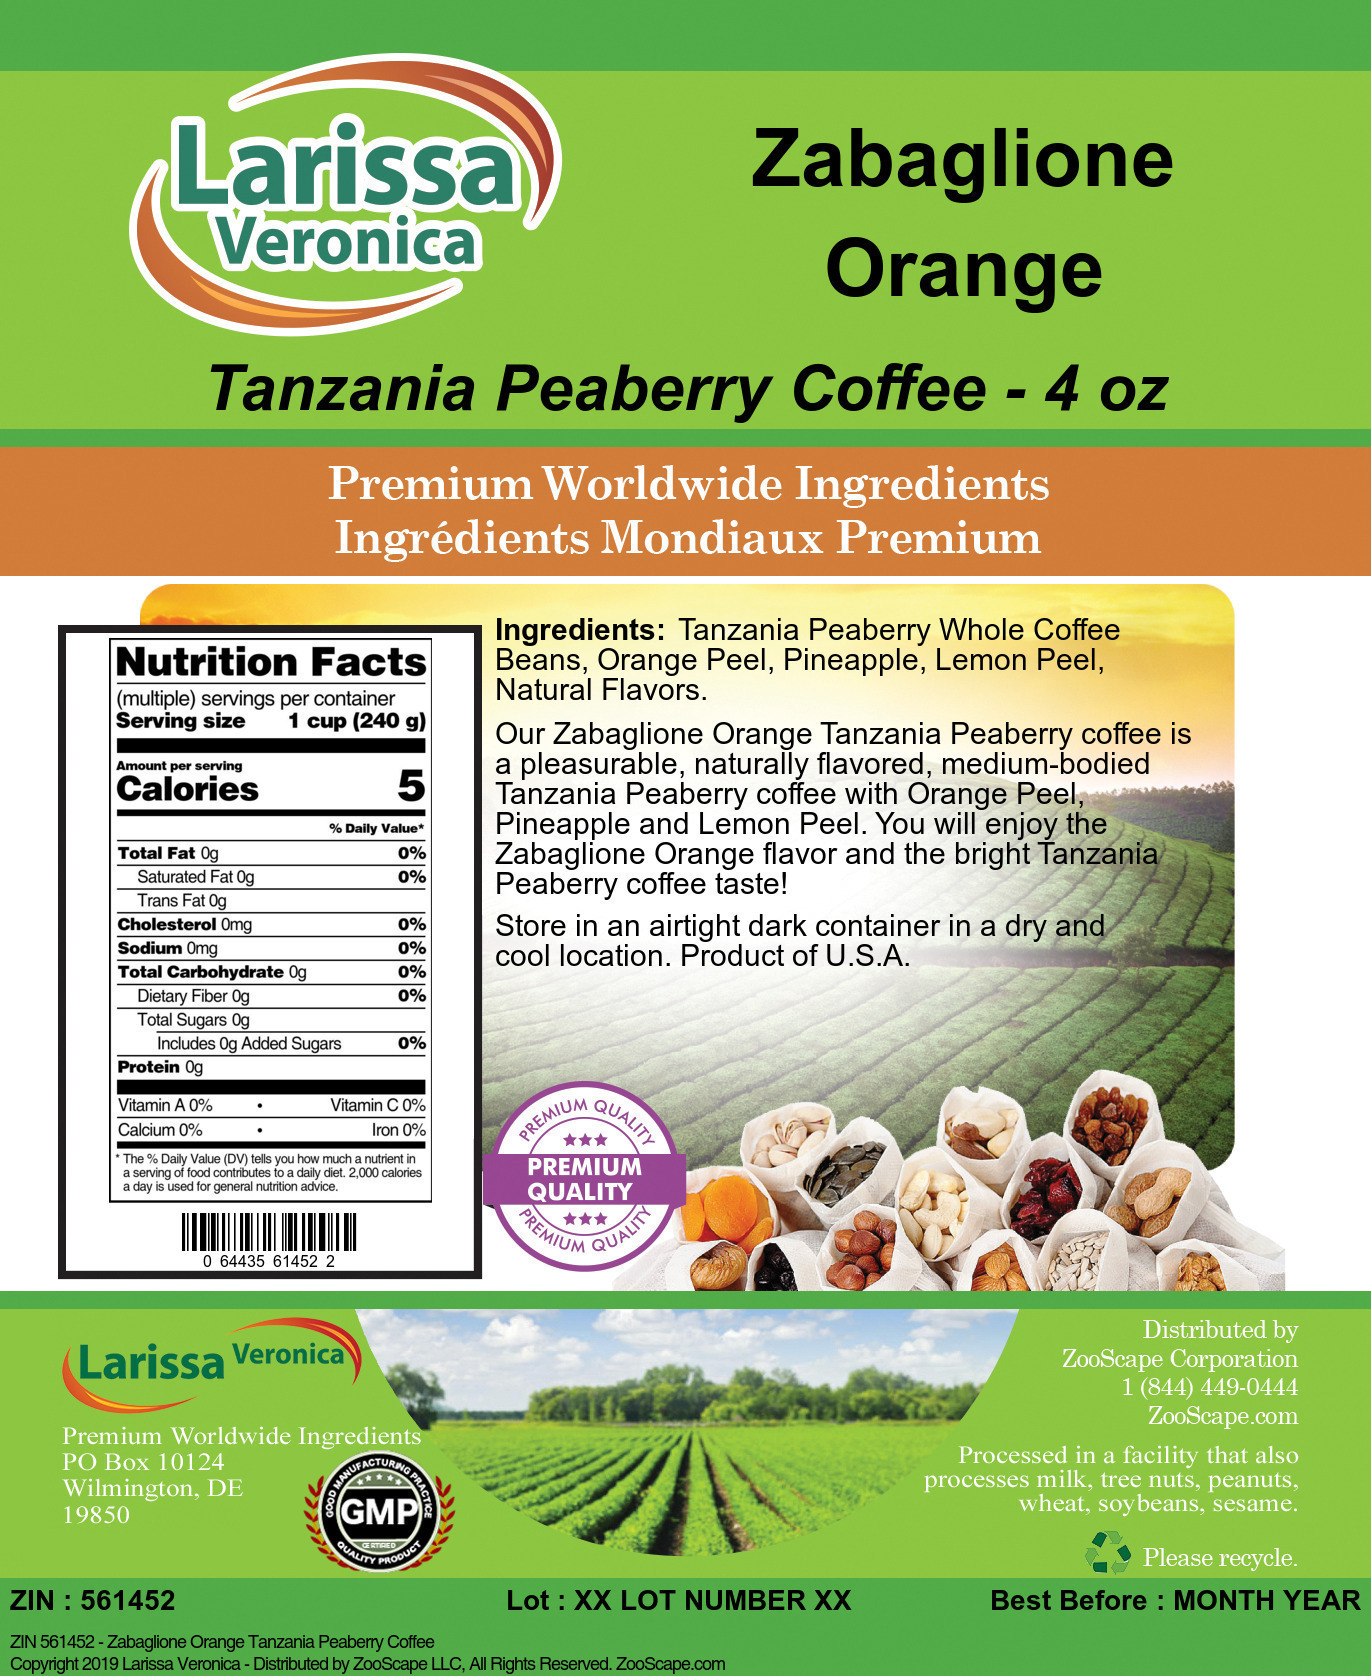 Zabaglione Orange Tanzania Peaberry Coffee - Label